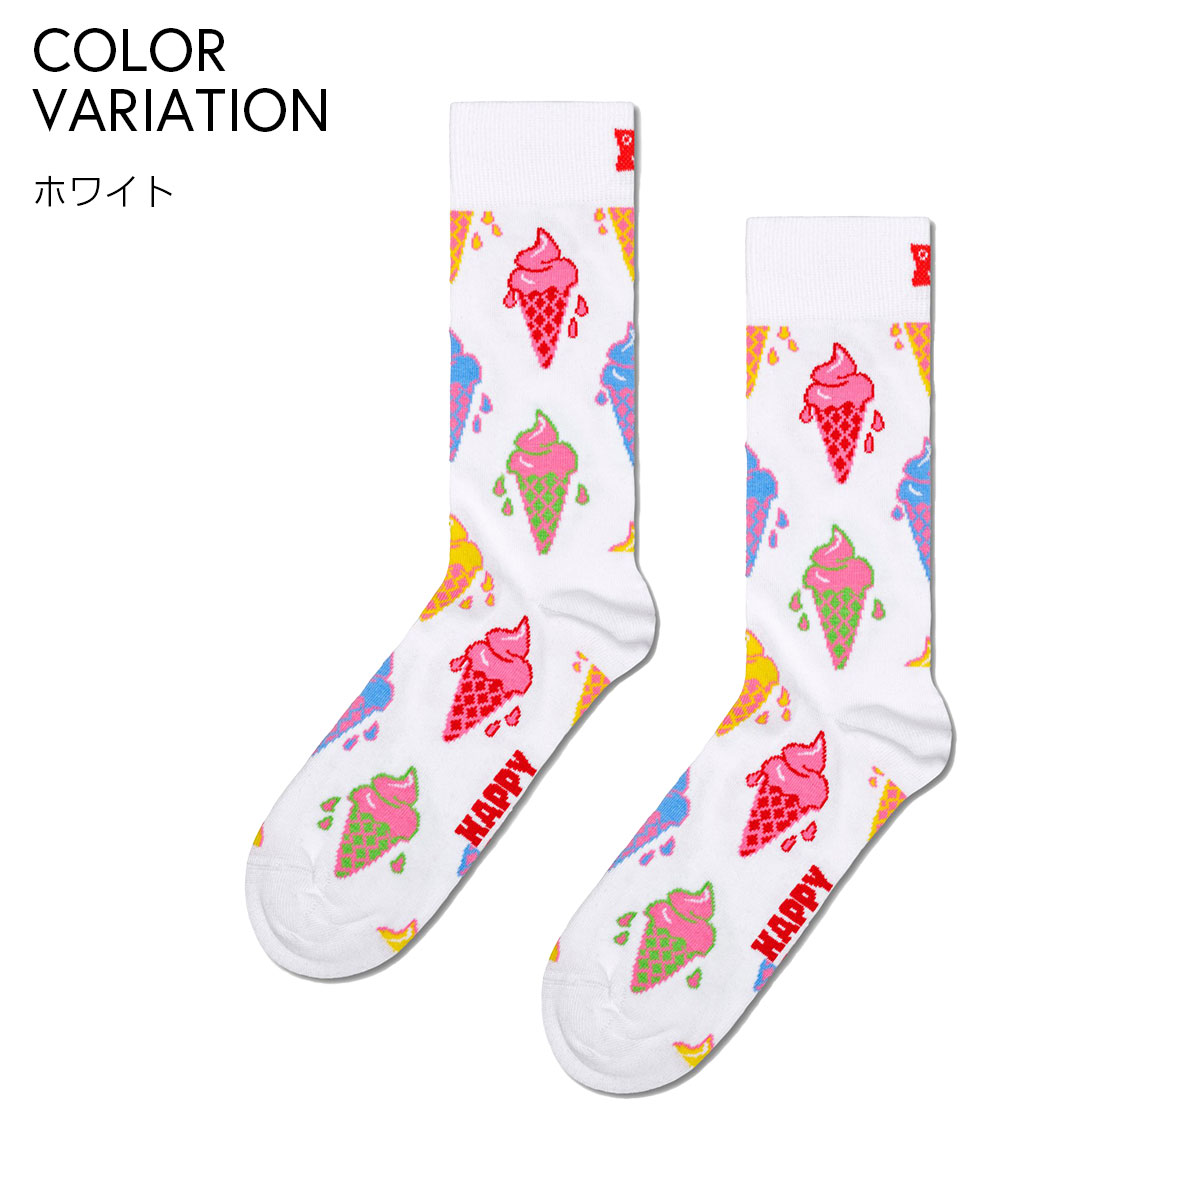 【24SS】Happy Socks ハッピーソックス Ice Cream ( アイスクリーム ) ホワイト クルー丈 ソックス ユニセックス メンズ ＆ レディース 10240056